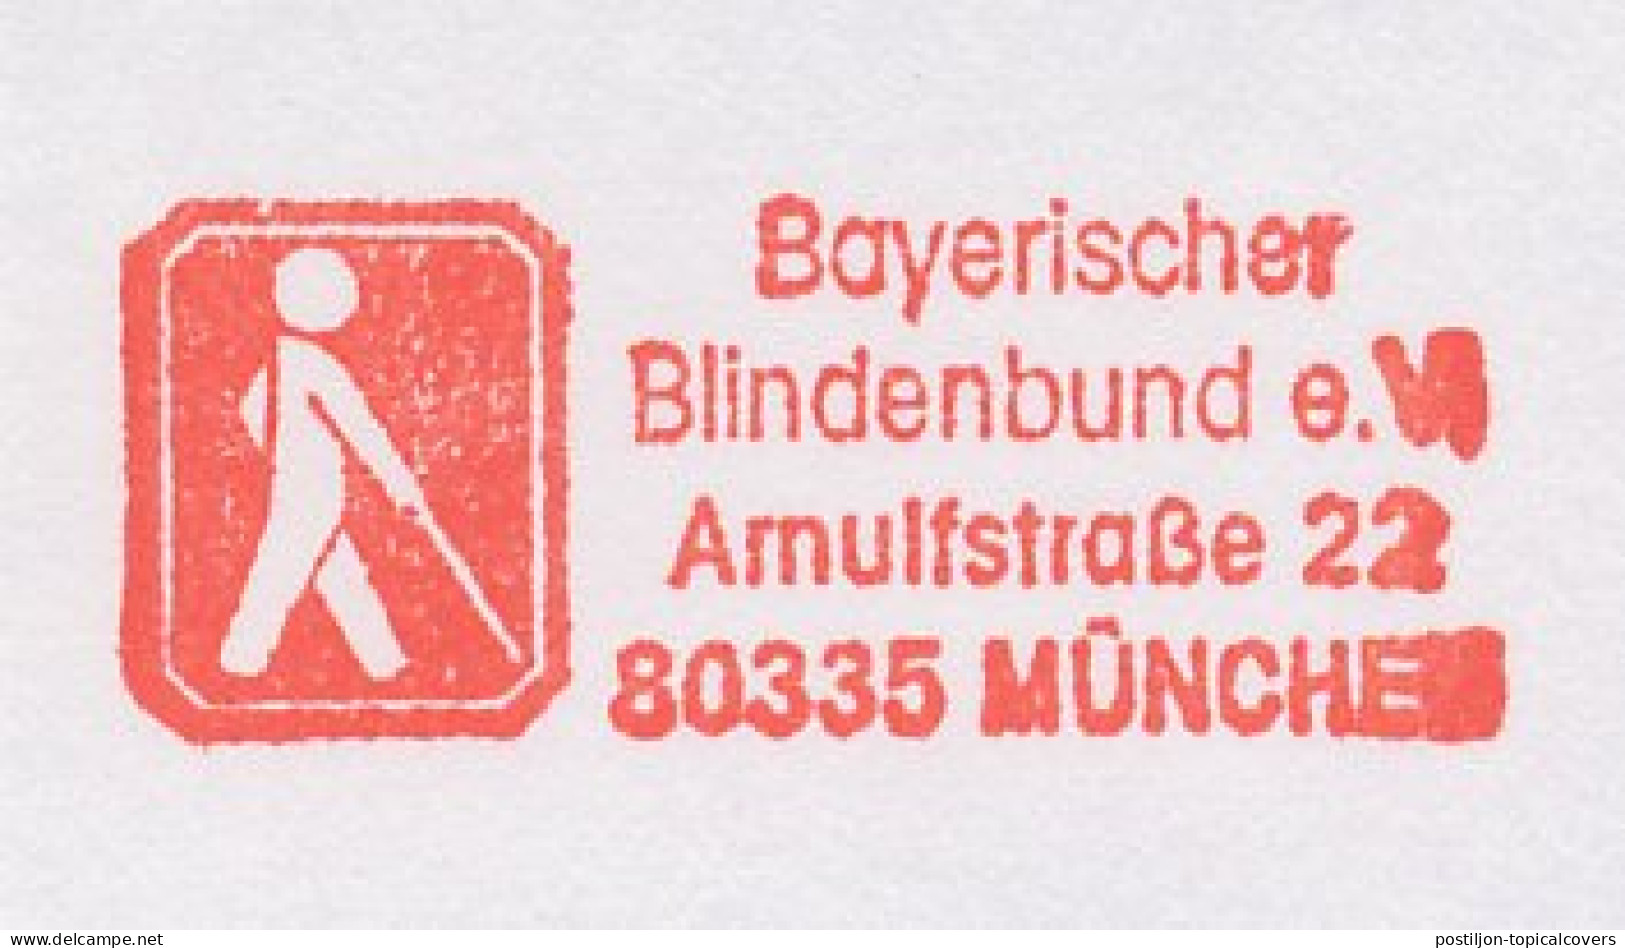 Meter Cut Germany 1998 Blind Association - Blind Stick - Handicap